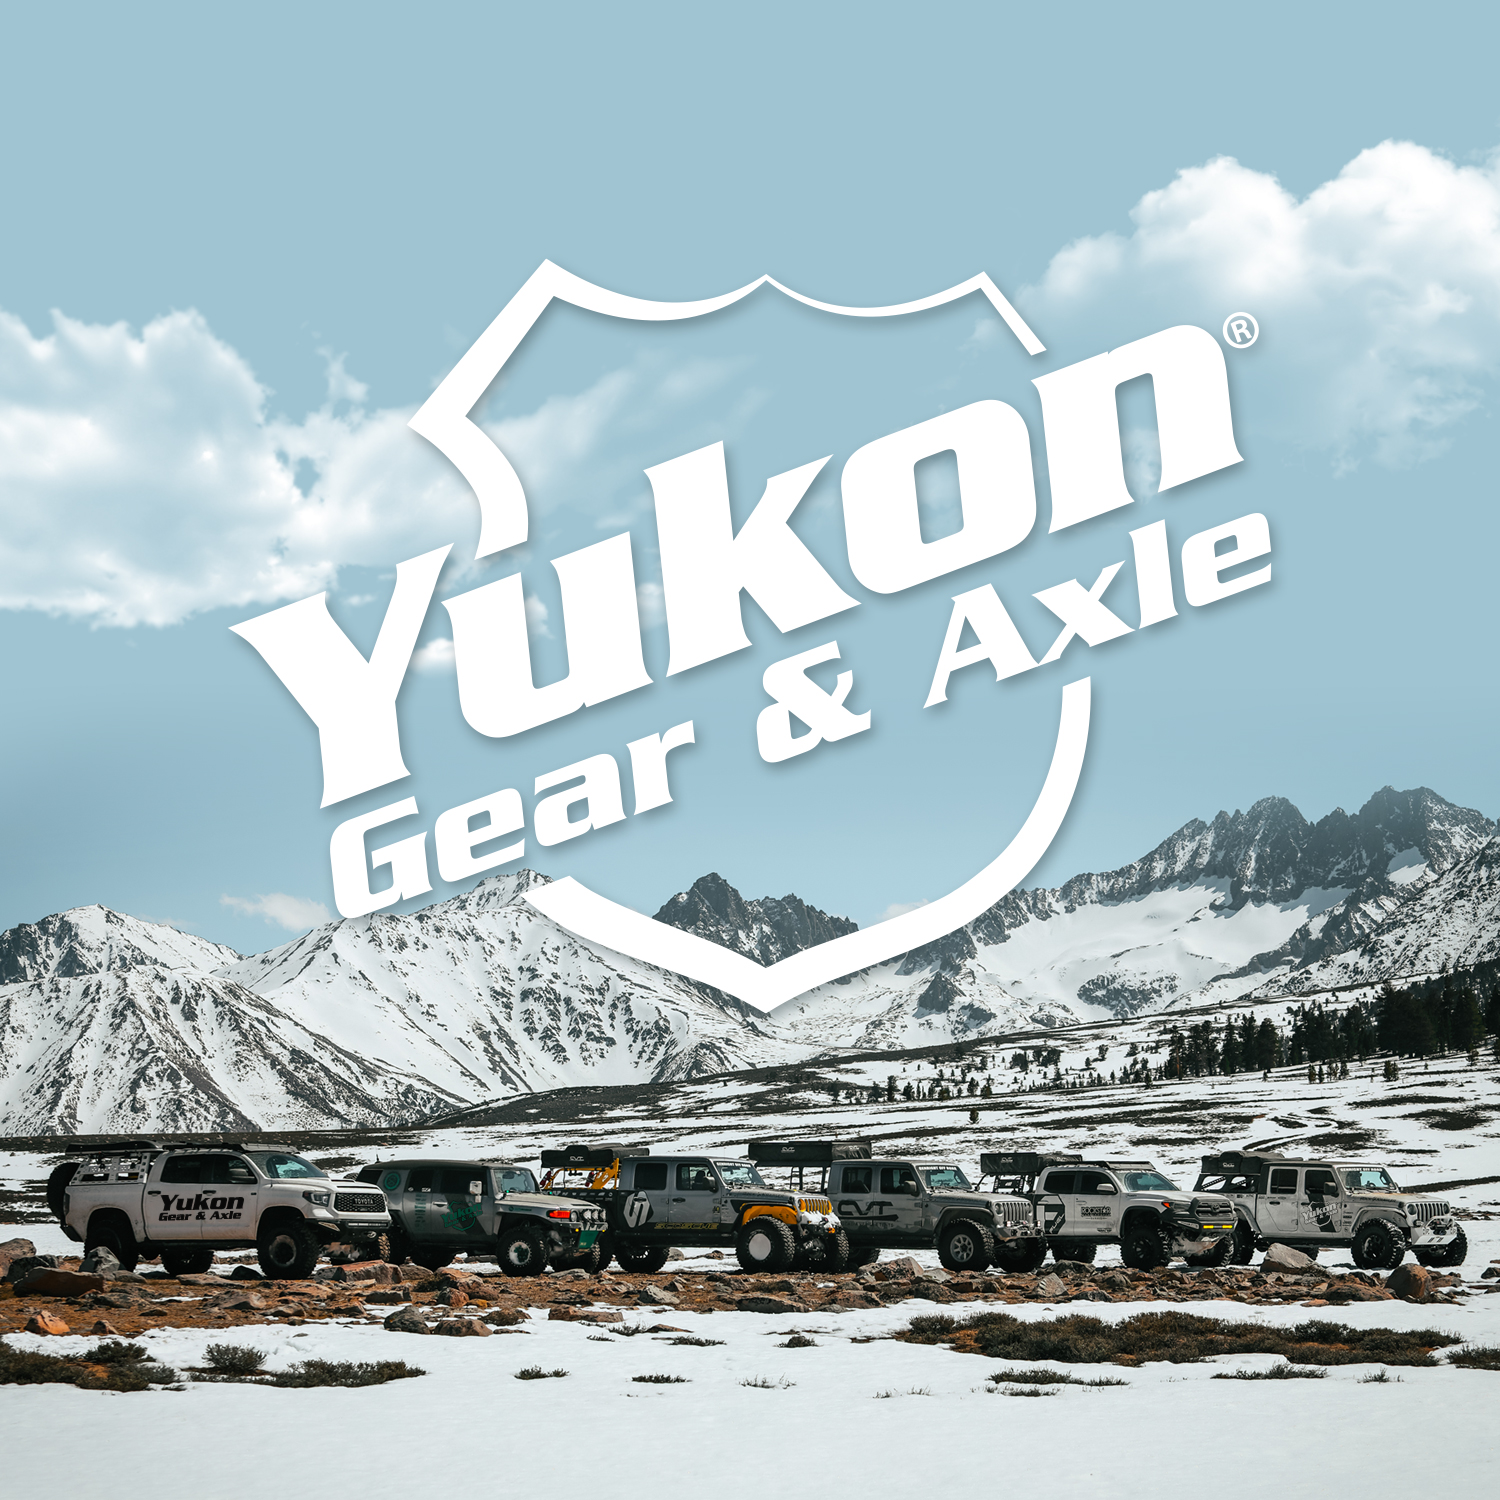 Yukon Re-Gear & Installation Kit, Ford 9.75", 2000-2010 F150, 5.13 ratio, fr&rr 